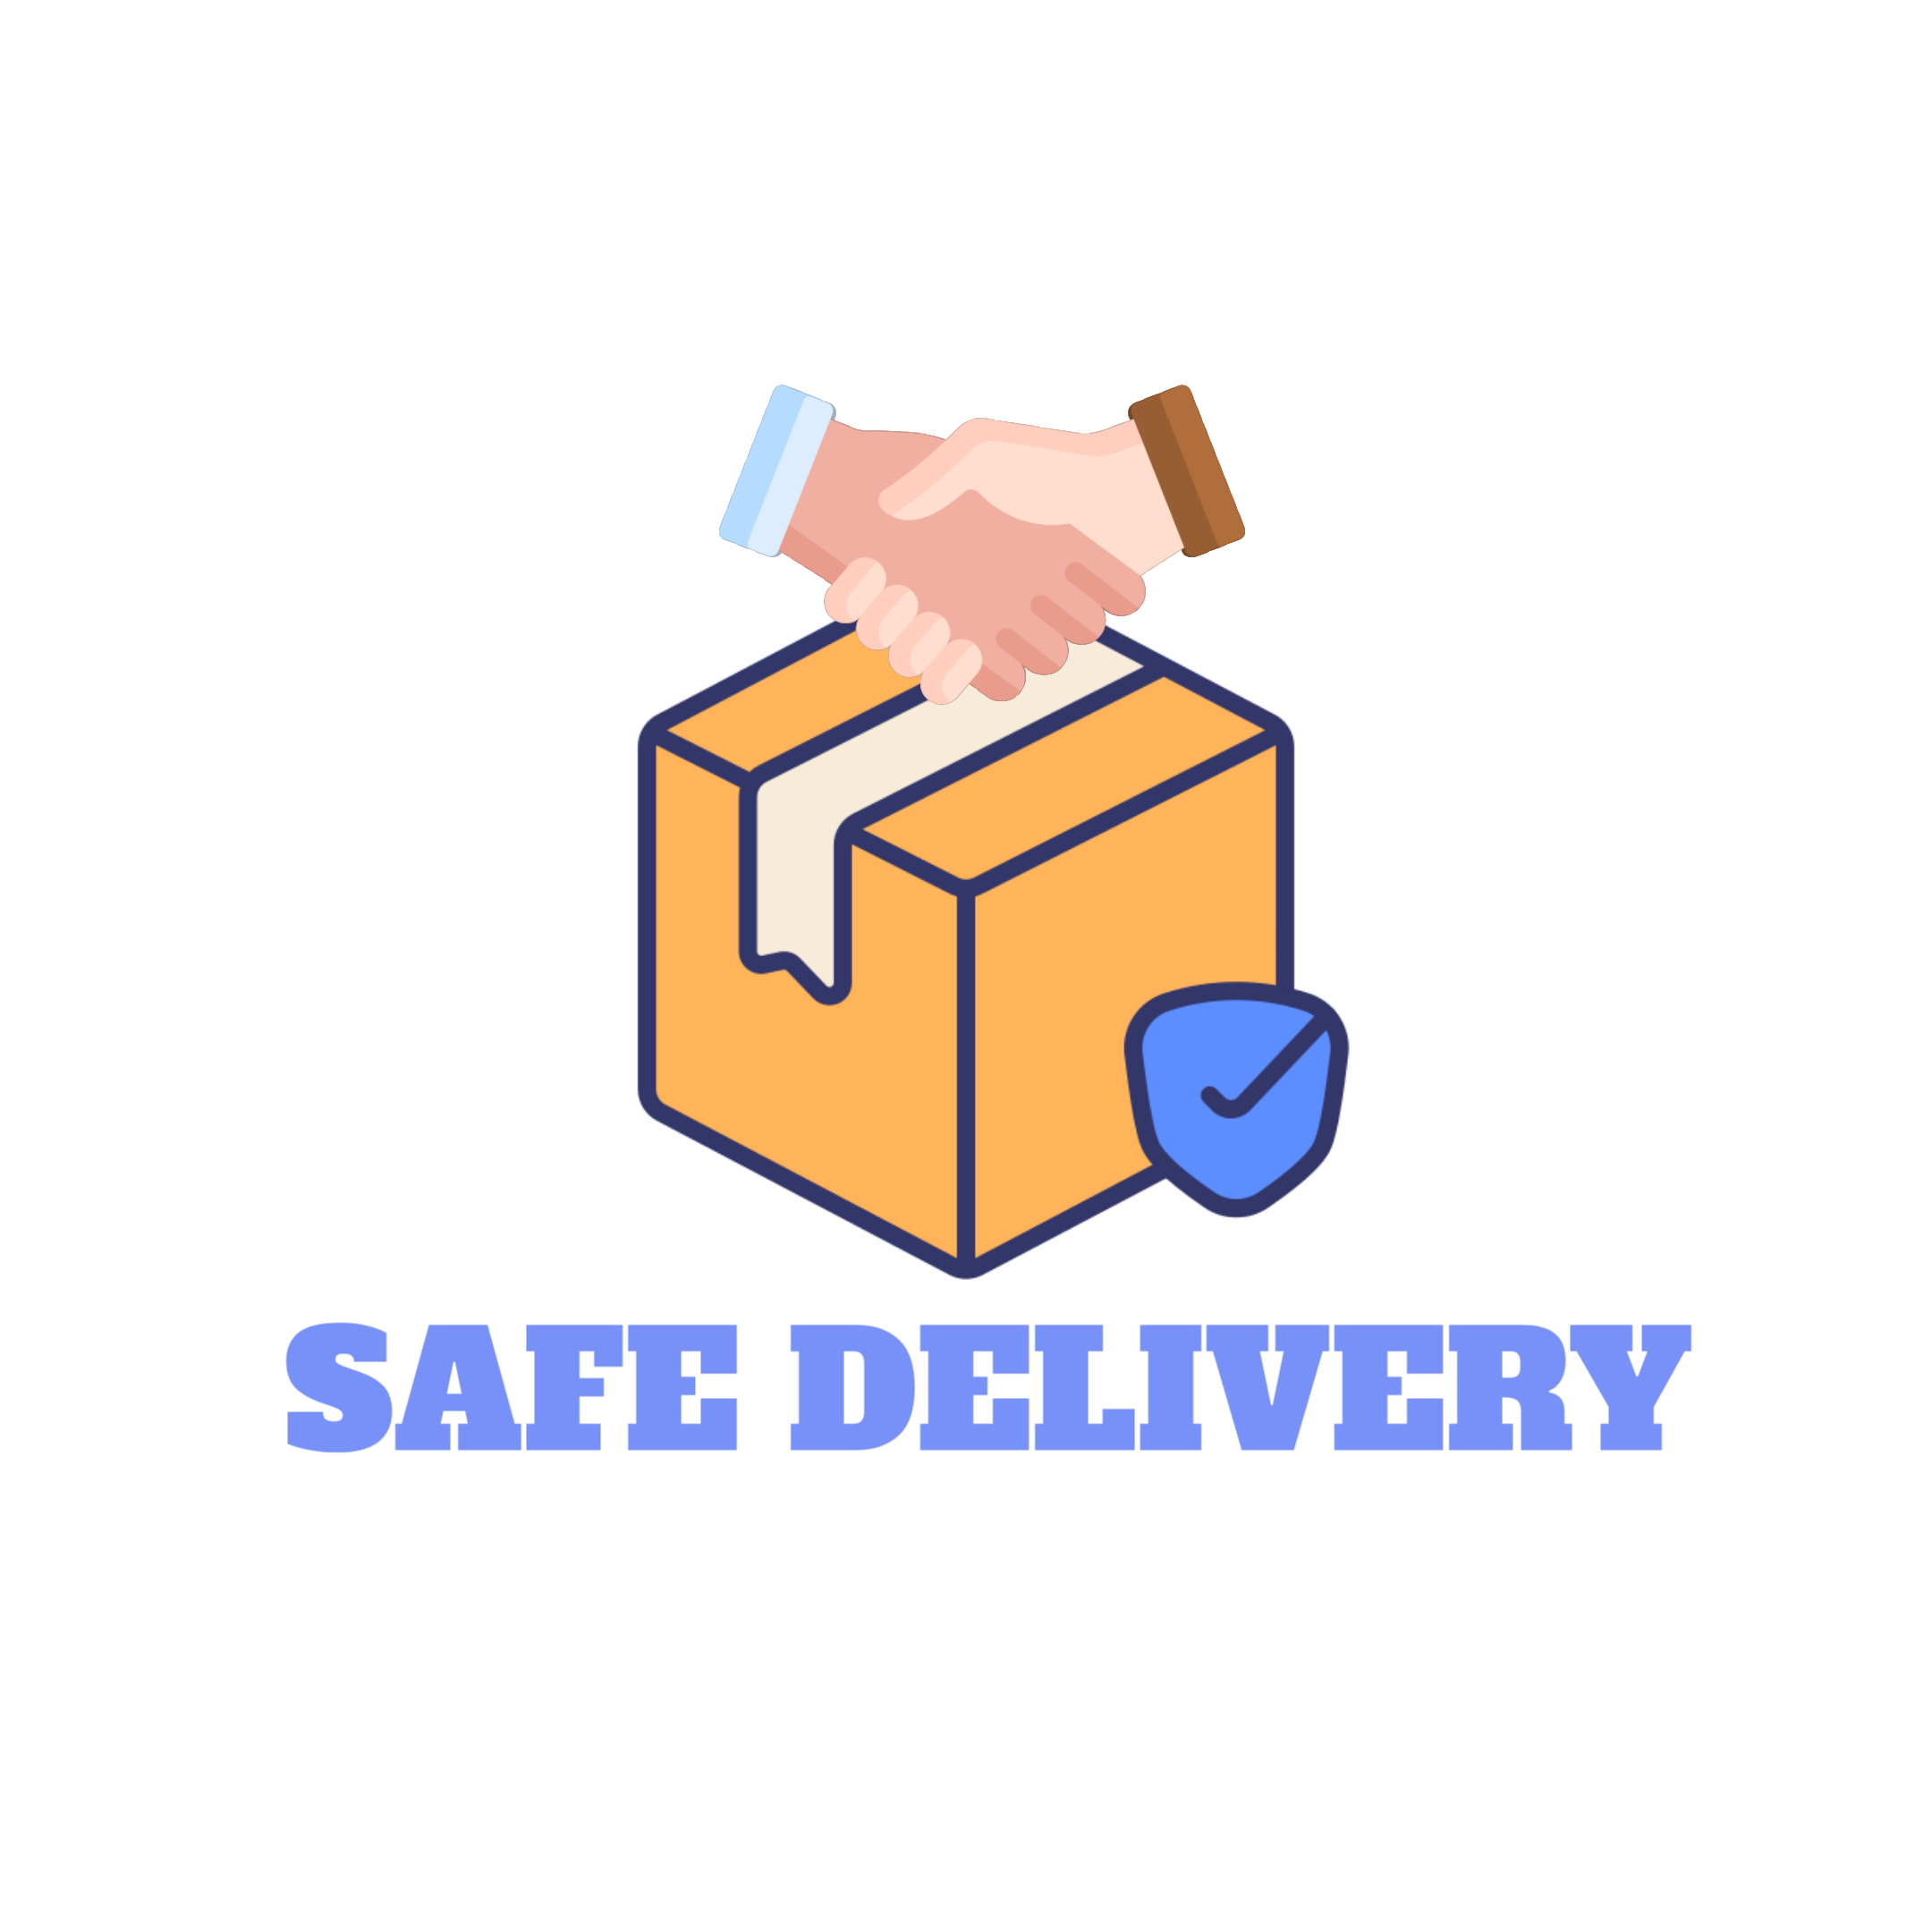 Shiftick safe delivery image